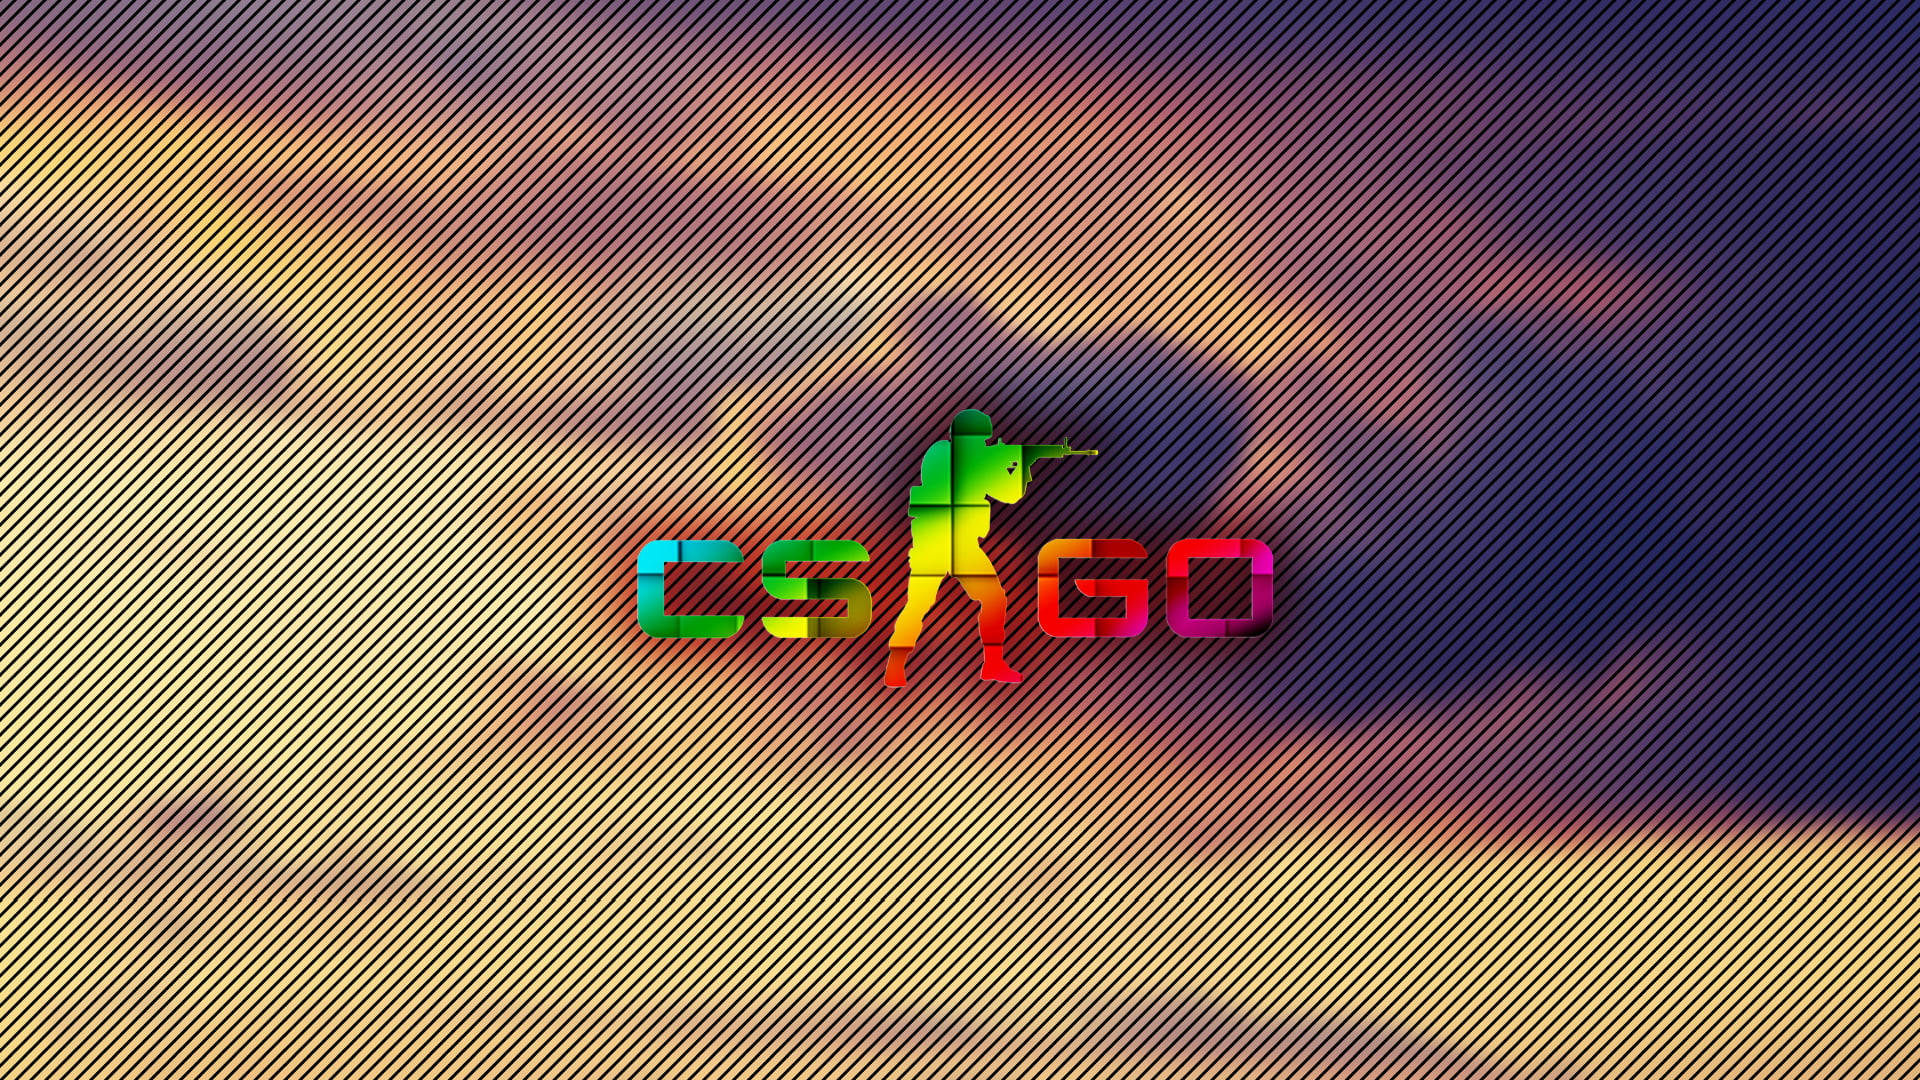 Cs Go Logo In Rainbow Design